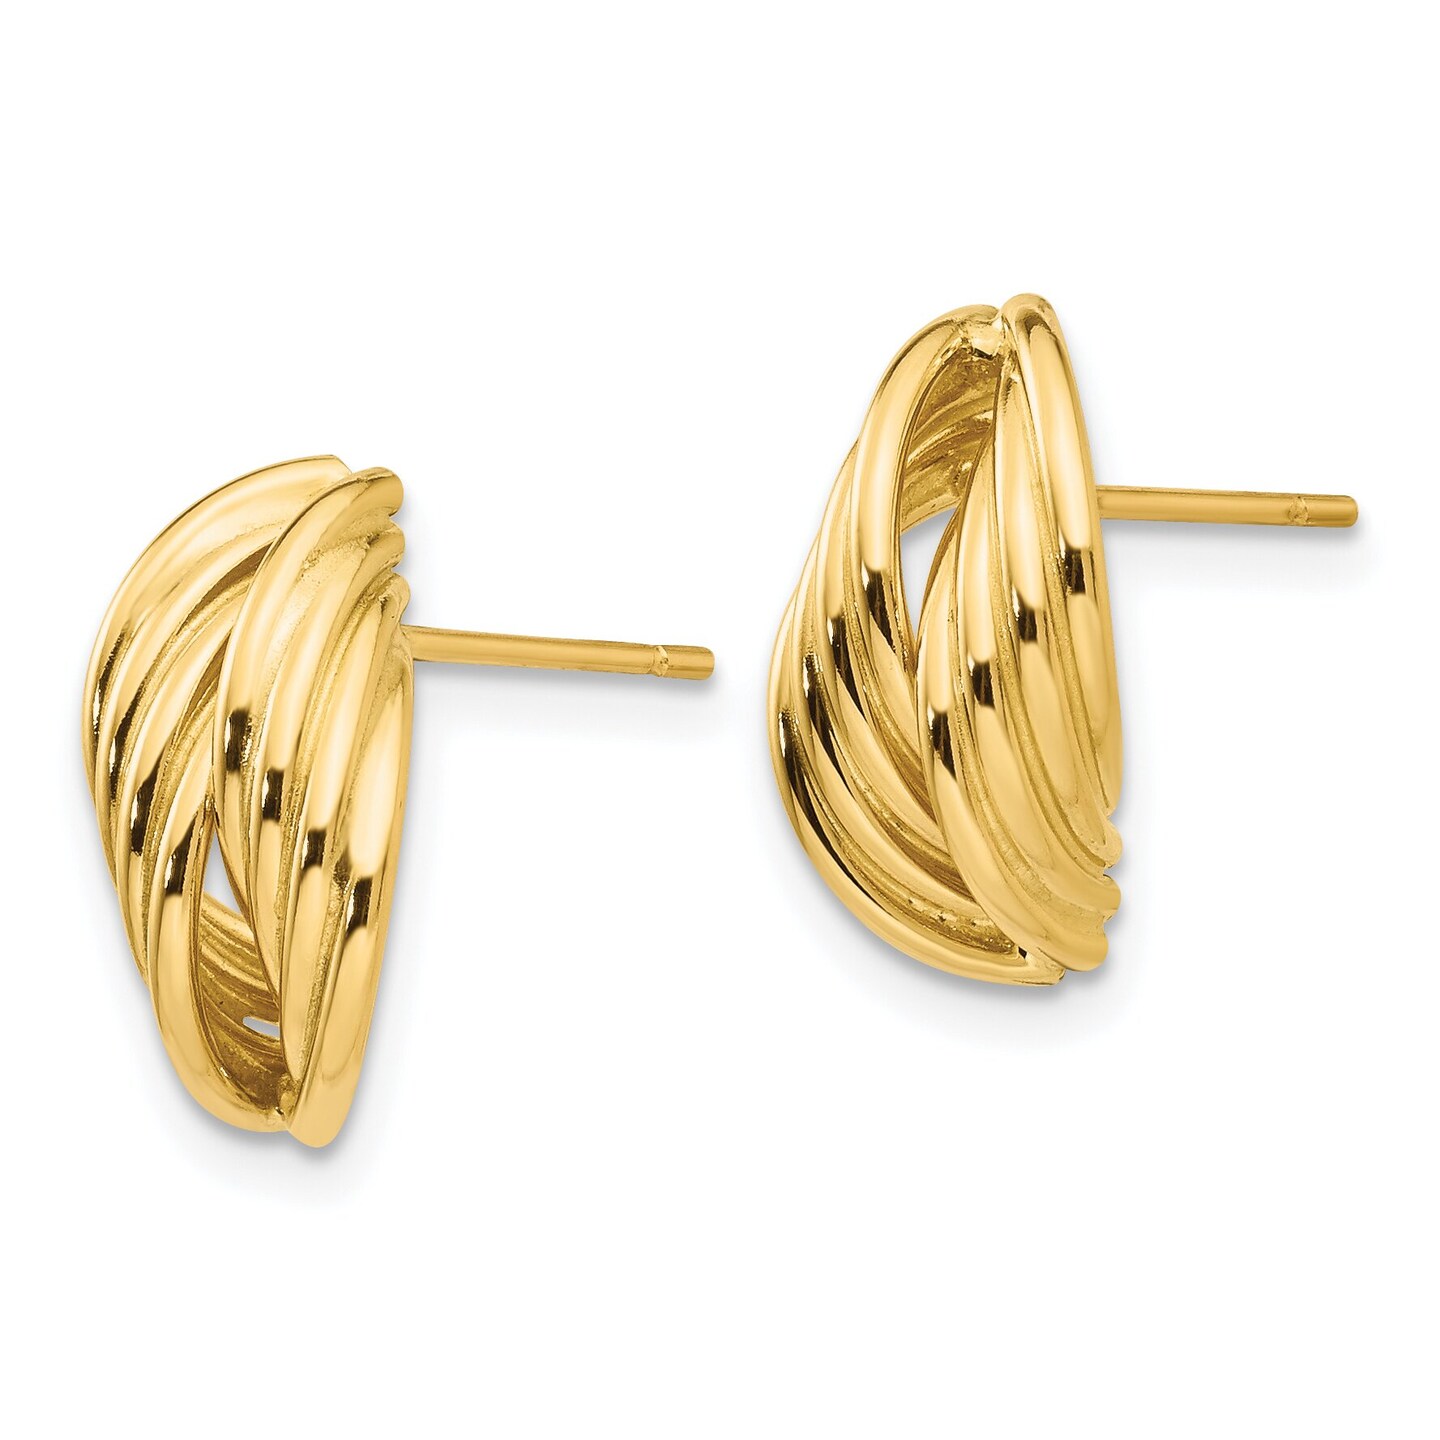 14K Yellow Gold Fancy Earrings Jewelry Ear Studs 13mm x 8mm